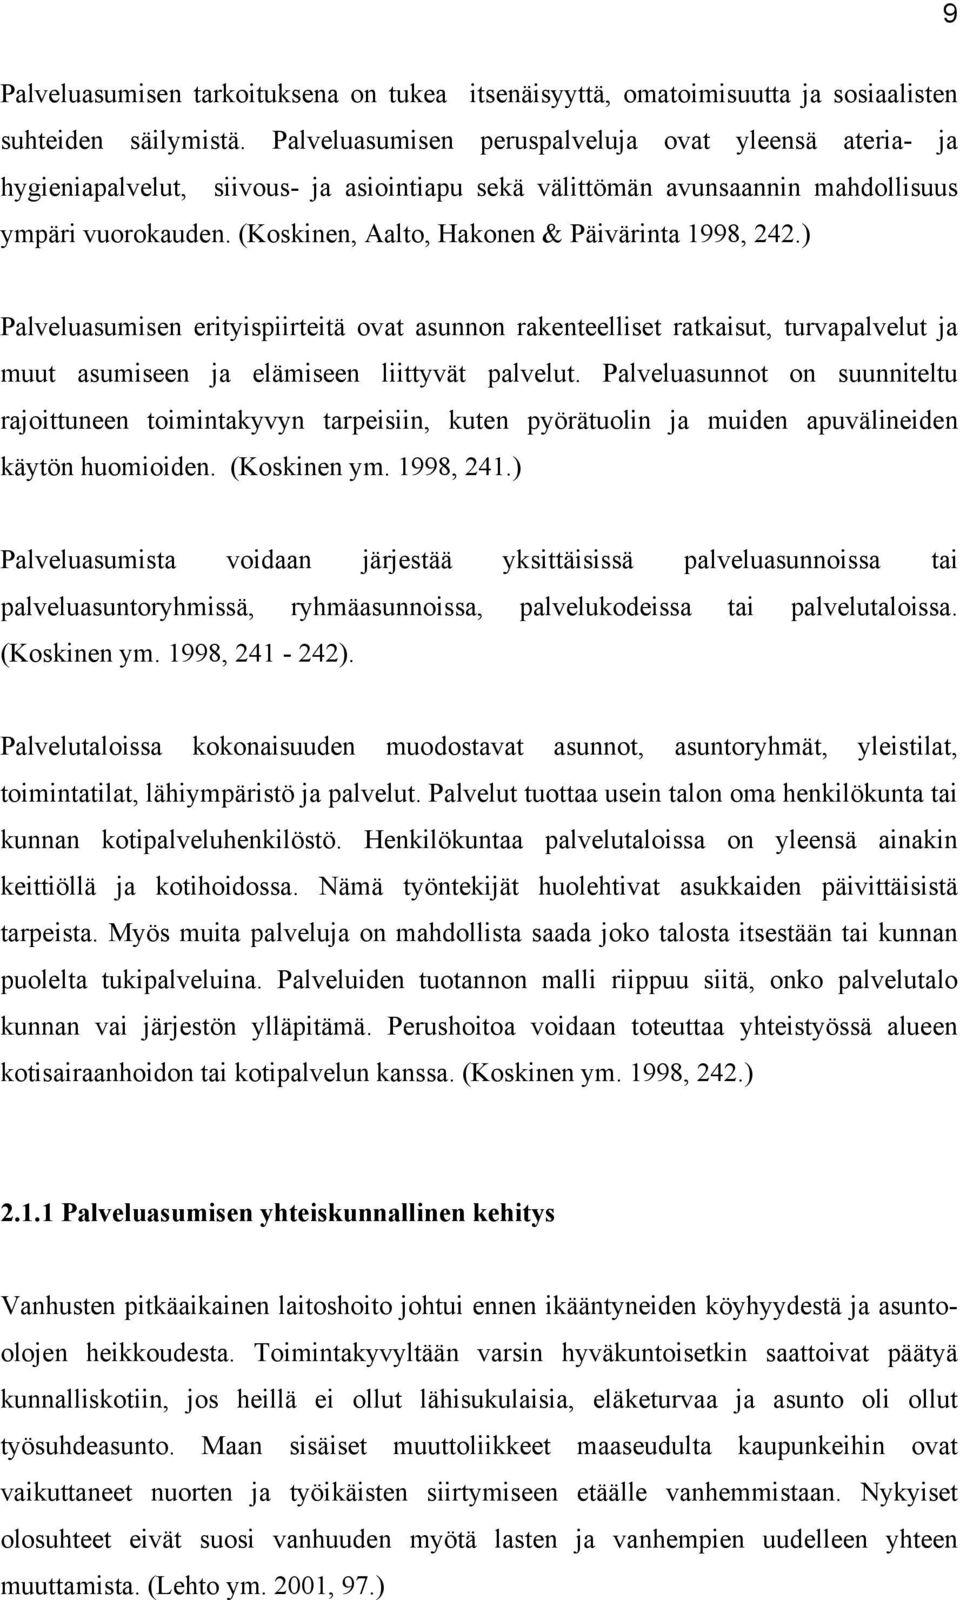 (Koskinen, Aalto, Hakonen & Päivärinta 1998, 242.) Palveluasumisen erityispiirteitä ovat asunnon rakenteelliset ratkaisut, turvapalvelut ja muut asumiseen ja elämiseen liittyvät palvelut.